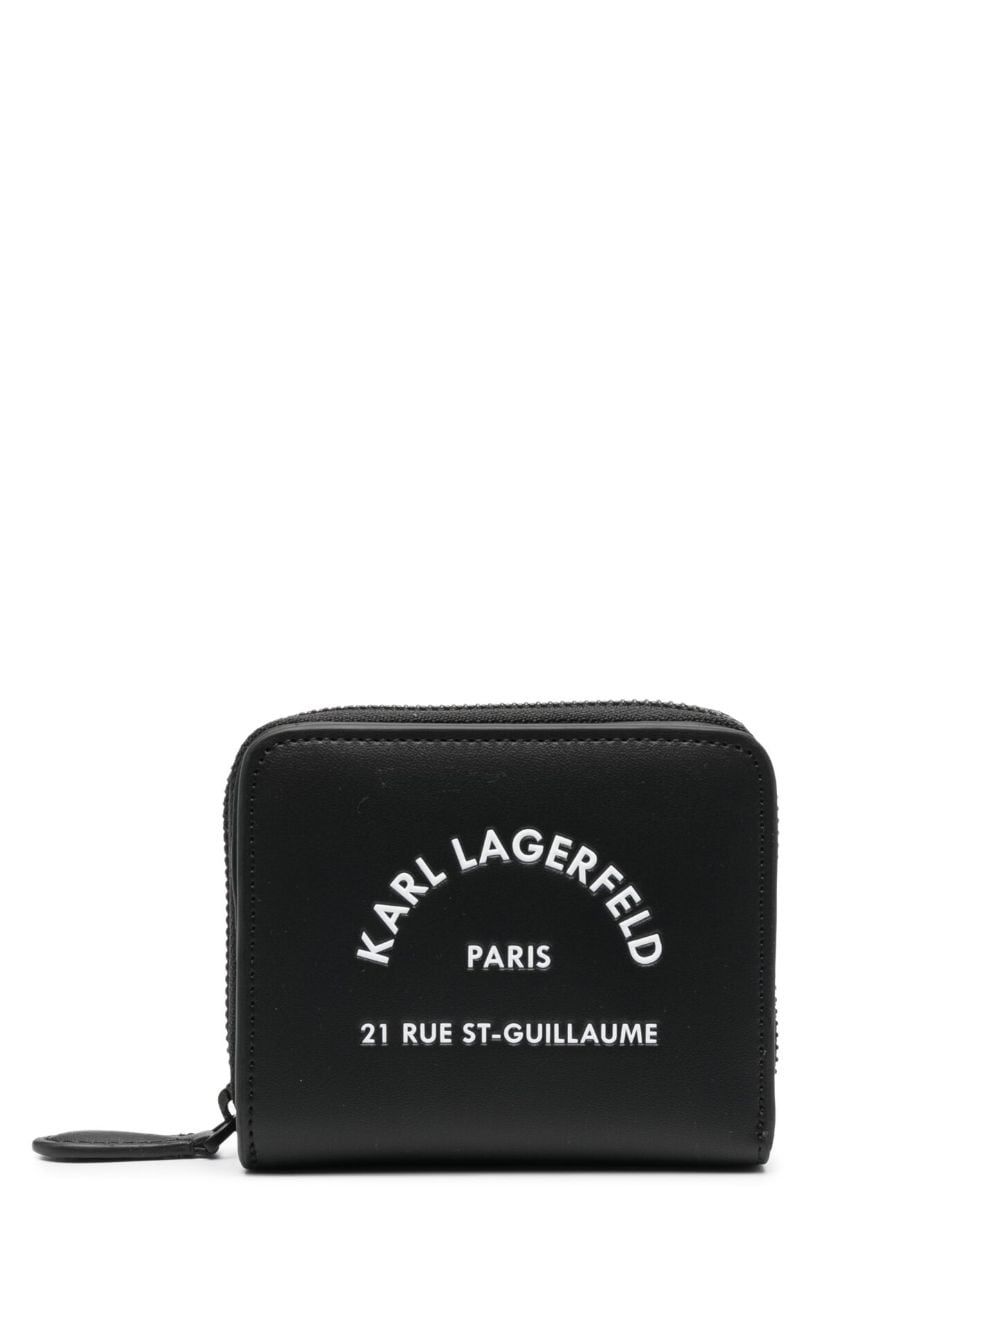 Karl Lagerfeld Wallets In Black